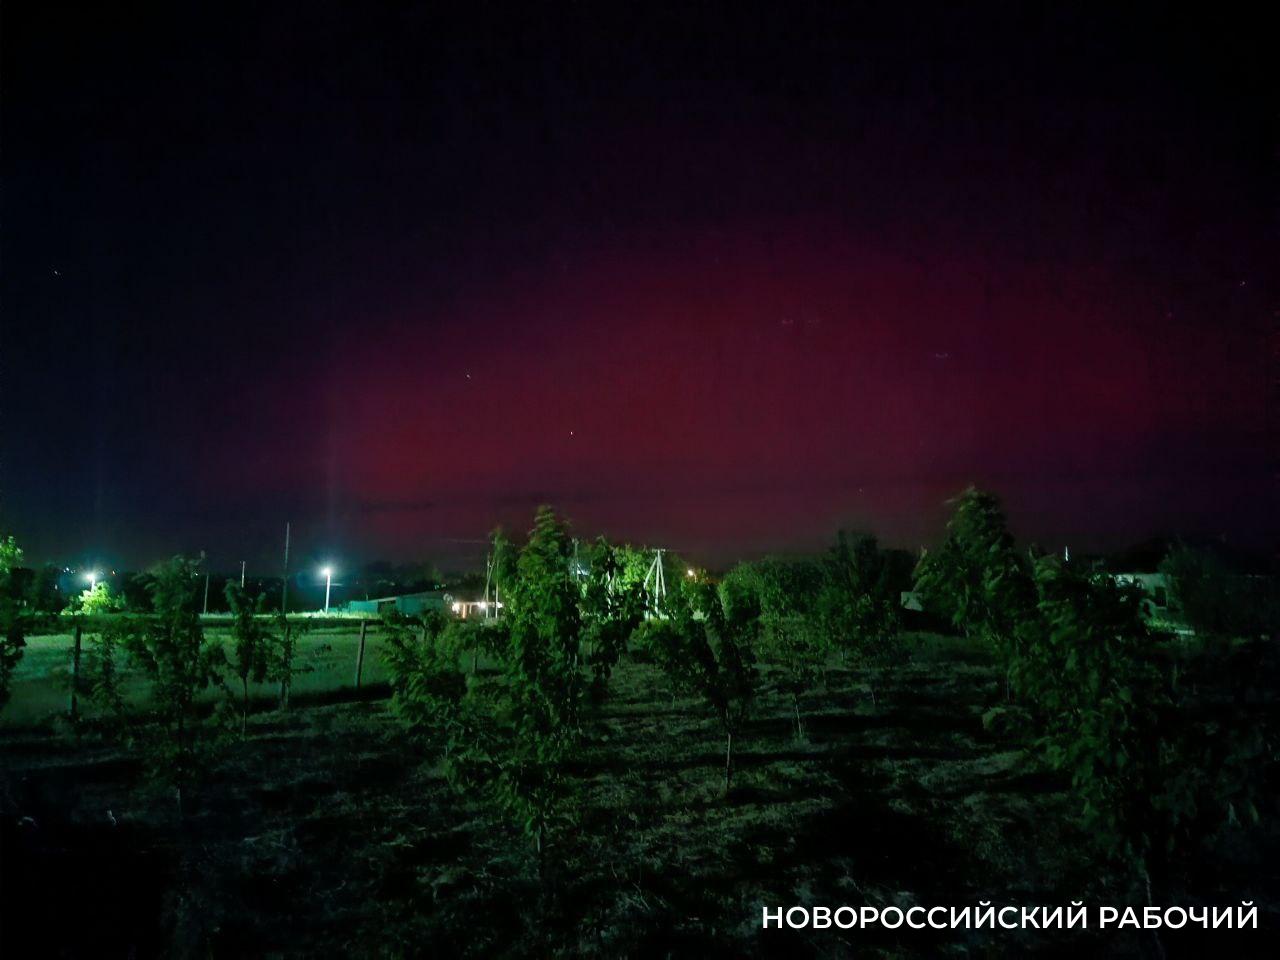 В соседнем с Новороссийском районе запечатлели полярное сияние. А у нас?